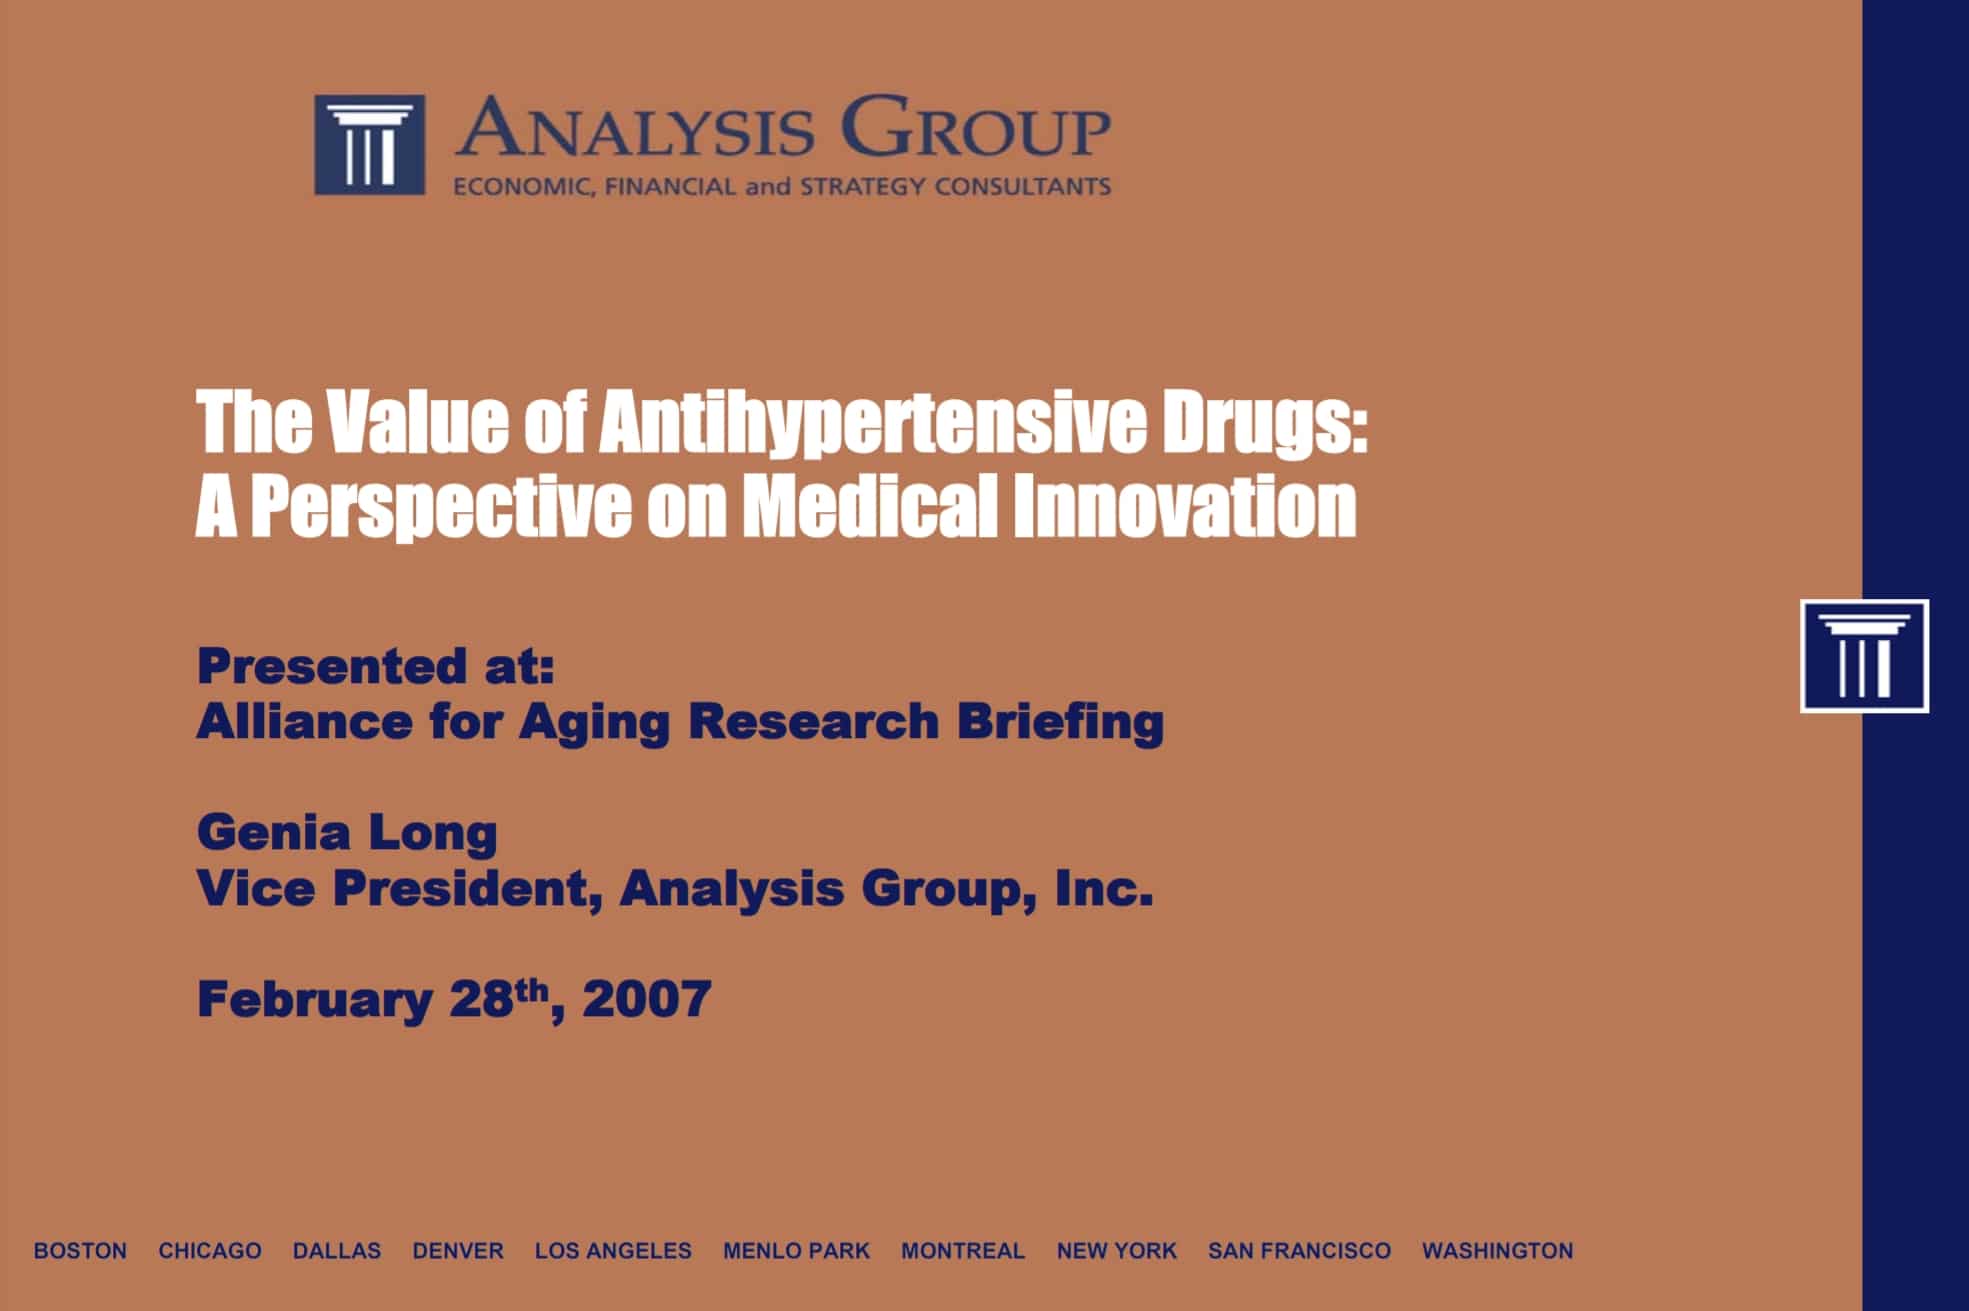 "Value of Antihypertensive Drugs" presentation cover.